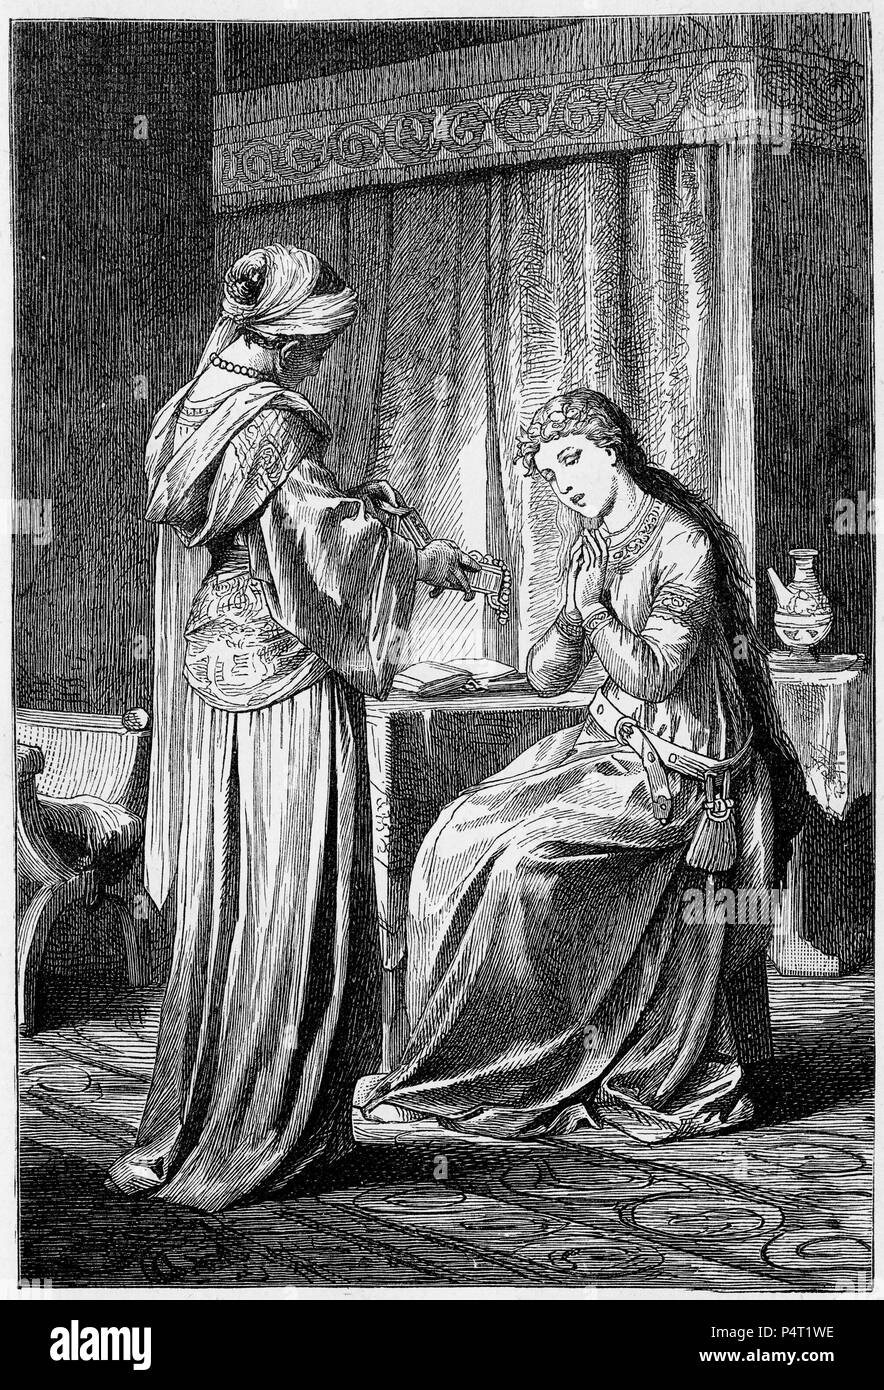 Incisione di due donne medievale ammirando il tesoro in una scatola di gioielli. Da una copia illustrata di Ivanhoe, 1878. Foto Stock